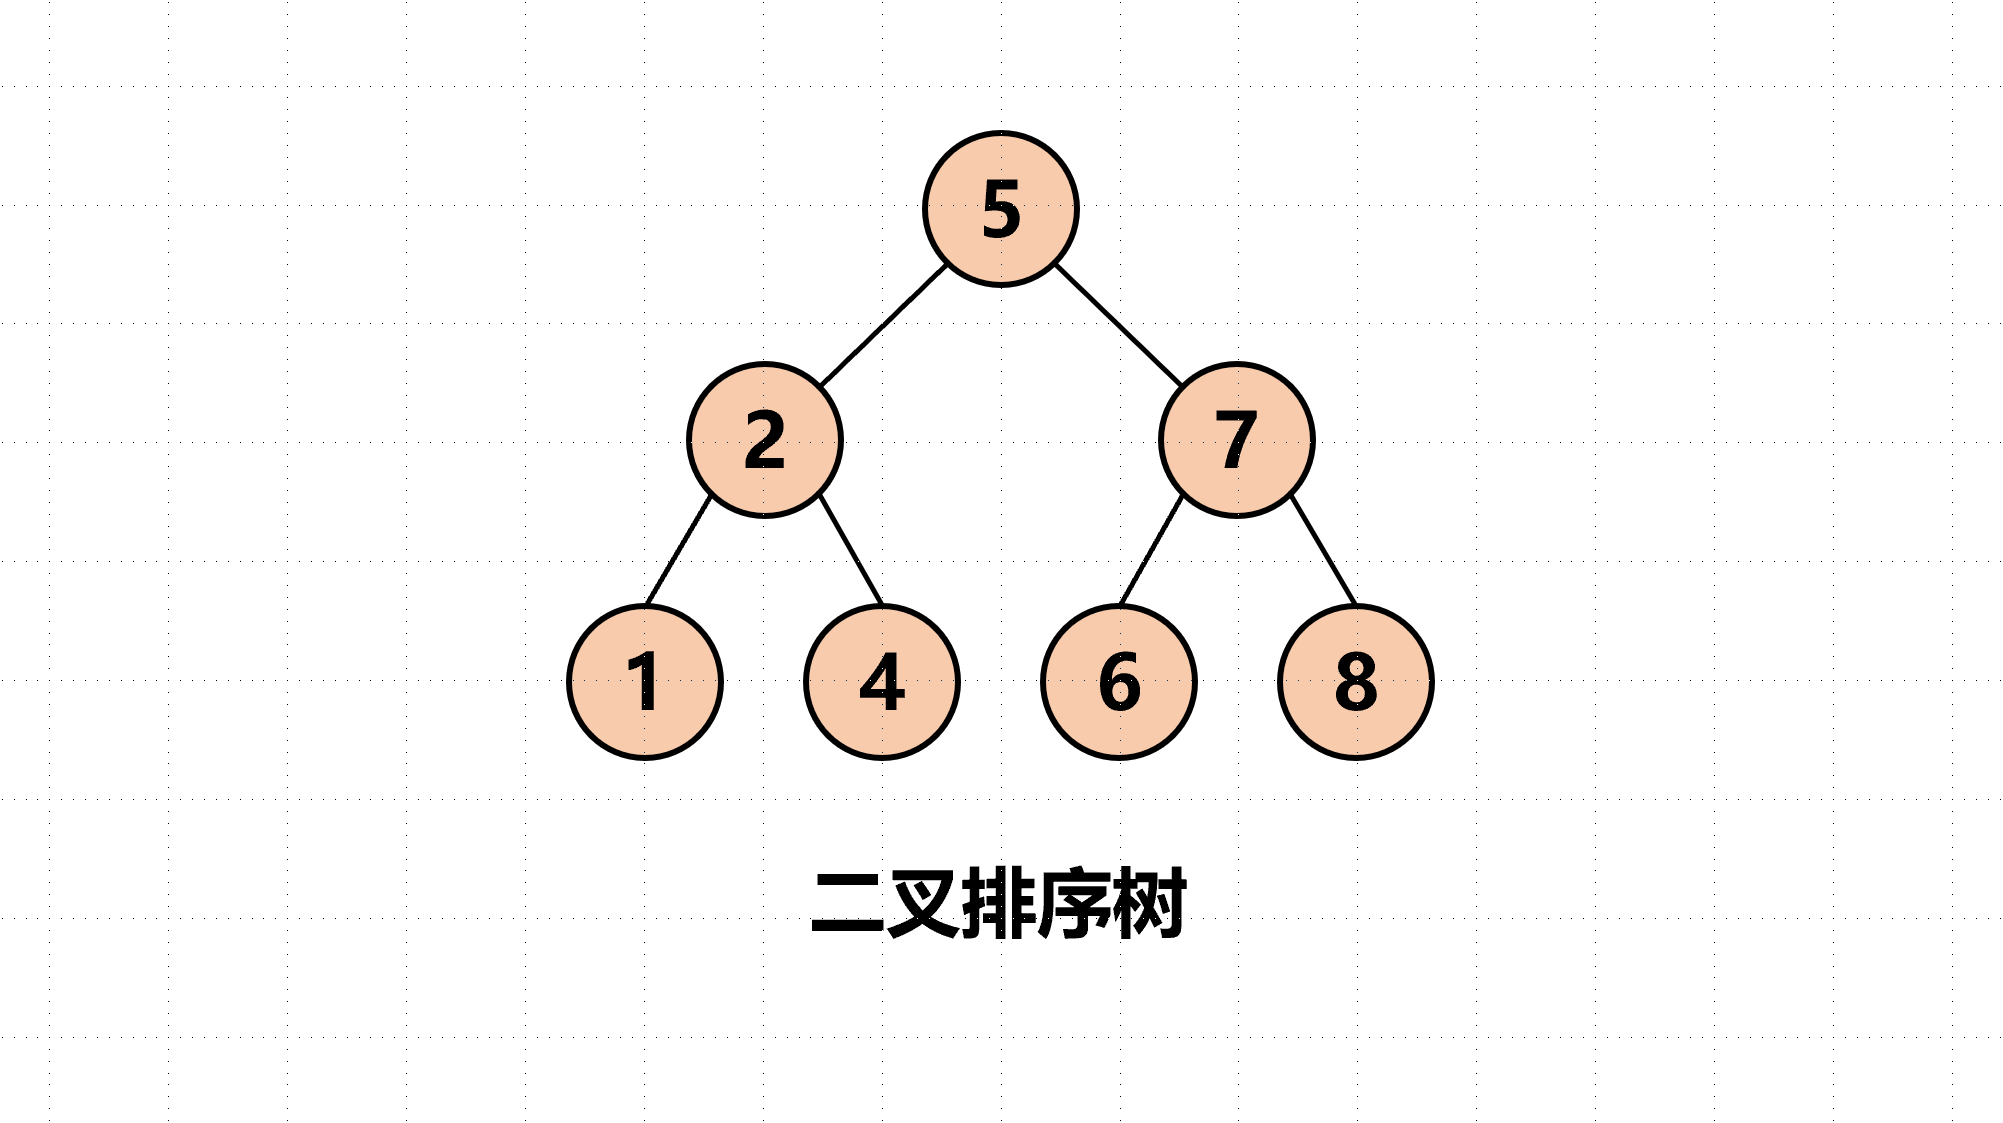 #图解数据结构：二叉排序树-知乎